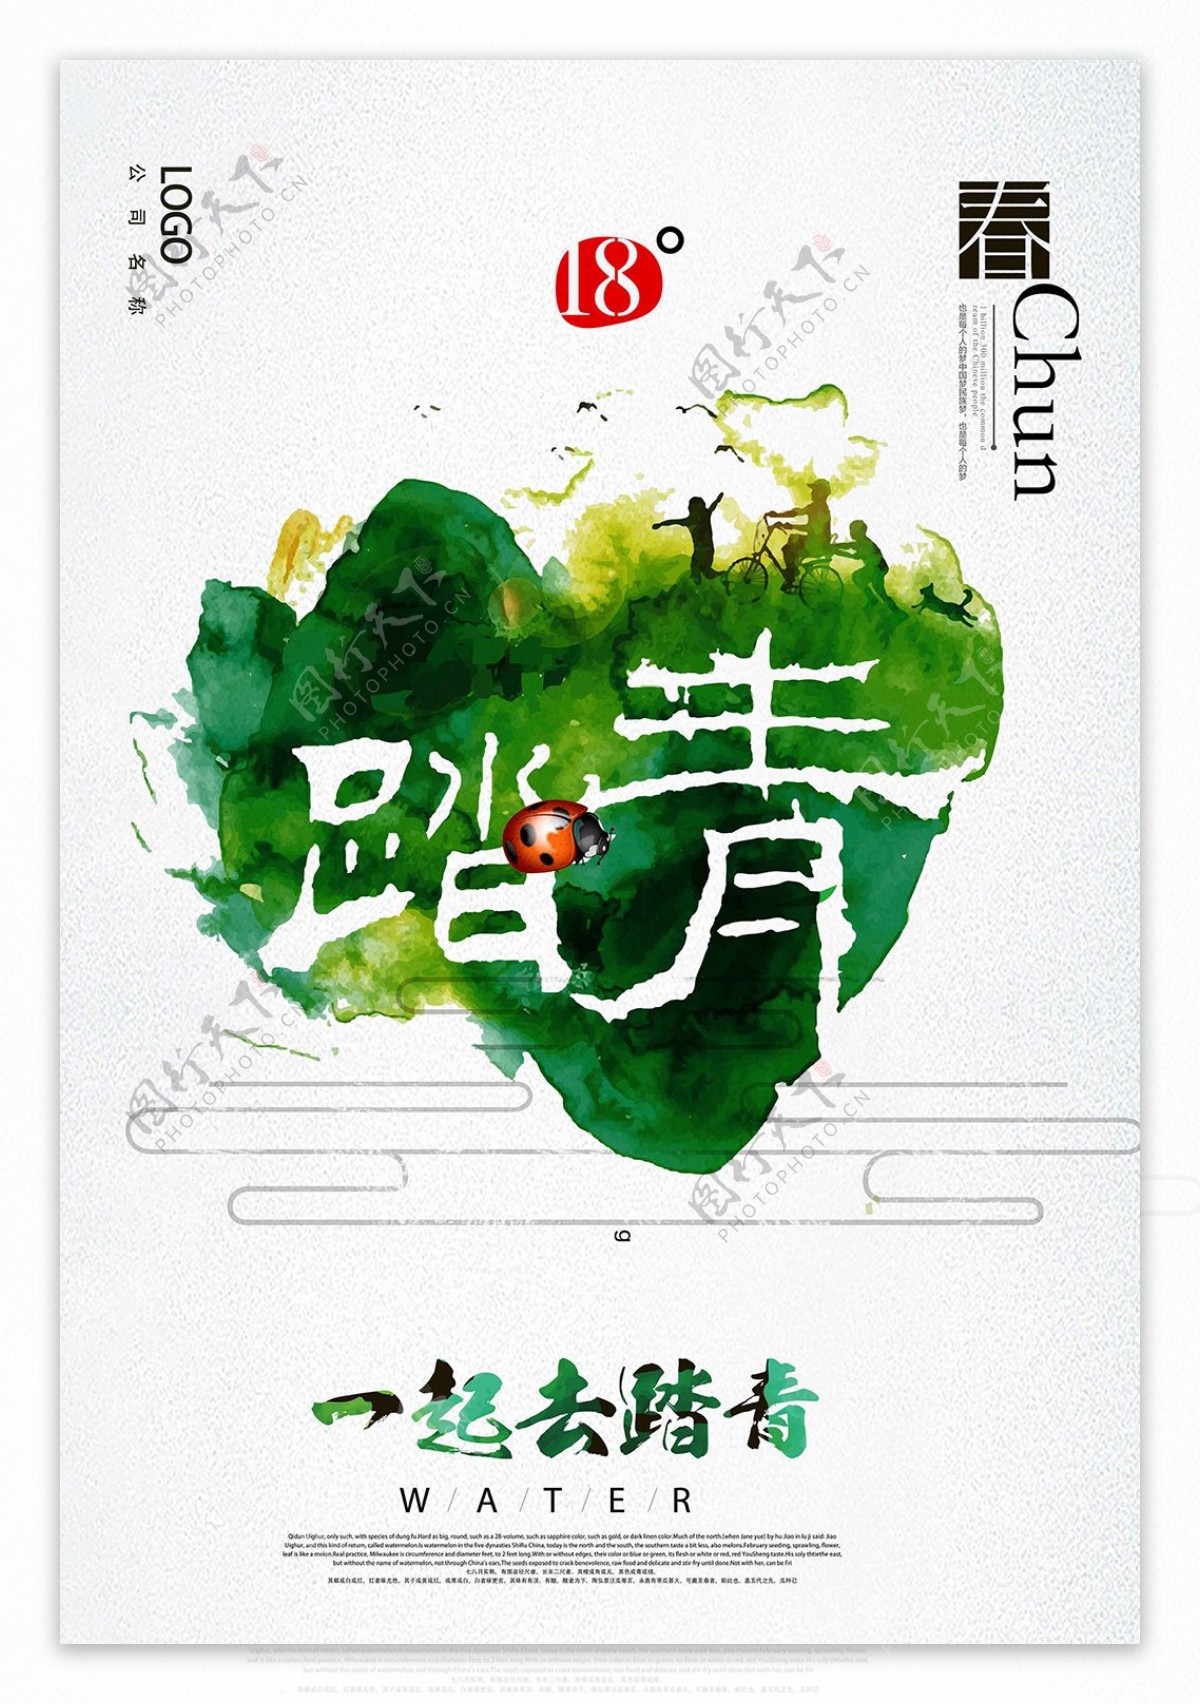 中国风个性旅游海报